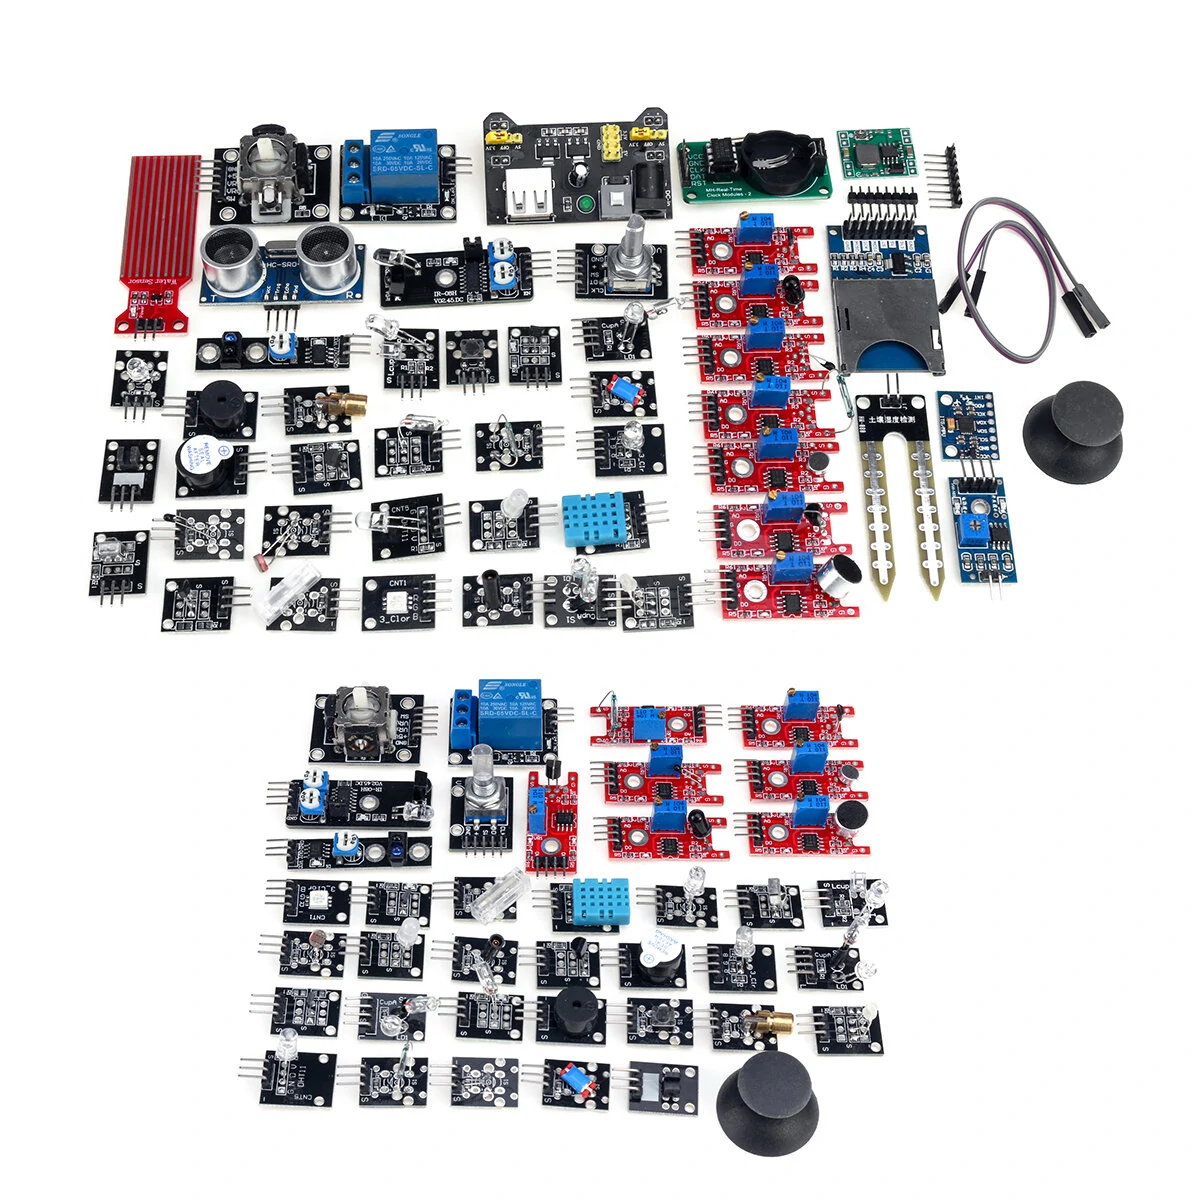 45 IN 1/37 IN 1 Sensor Module Starter Kits Set For Arduino Raspberry Pi Education Bag Package - 1